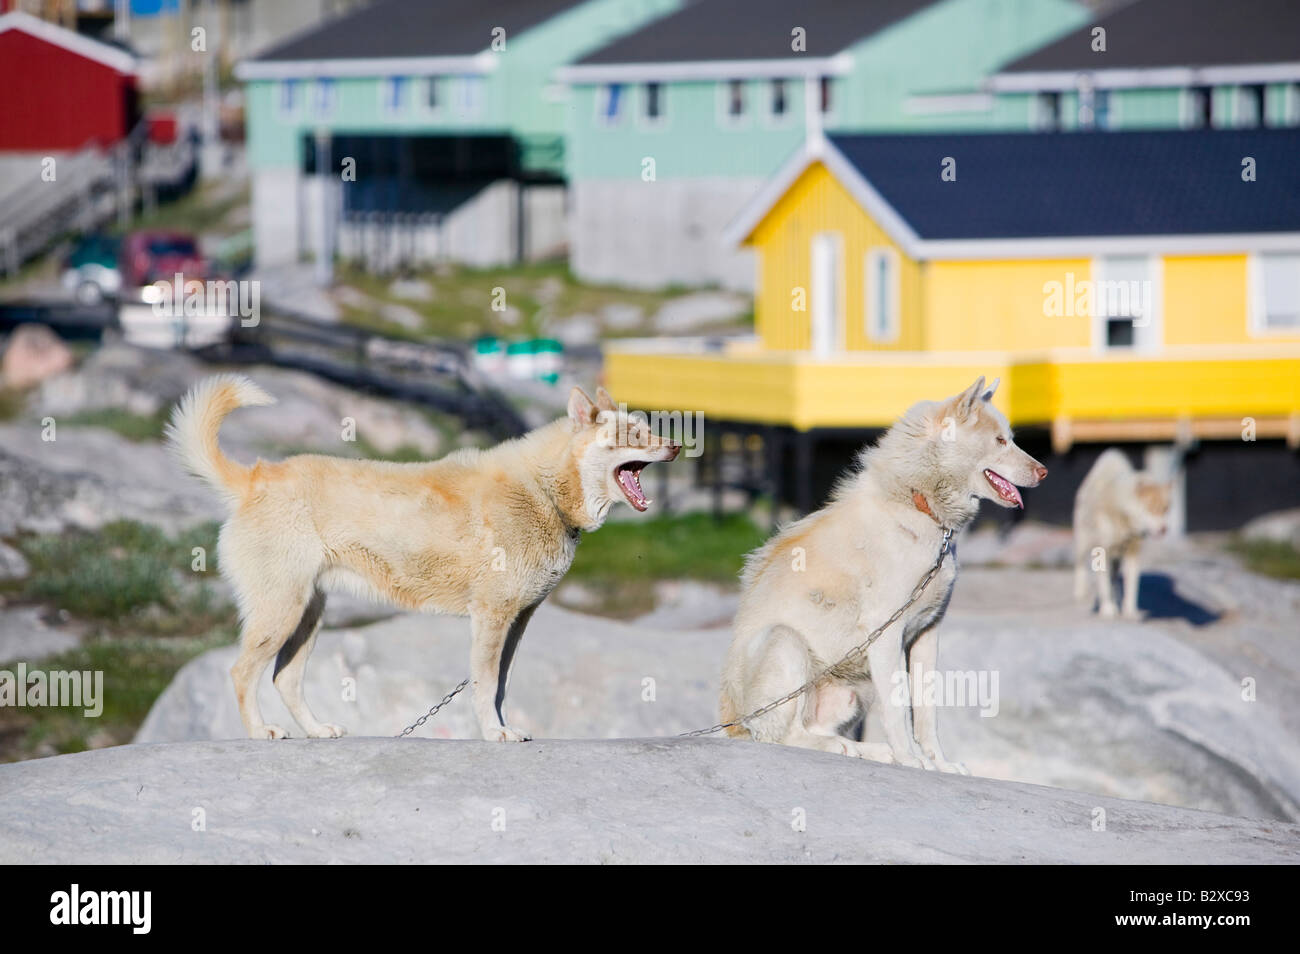 Husky chiens de traîneau inuits traditionnels en face de maisons colorées à Ilulissat Groenland Groenland Banque D'Images